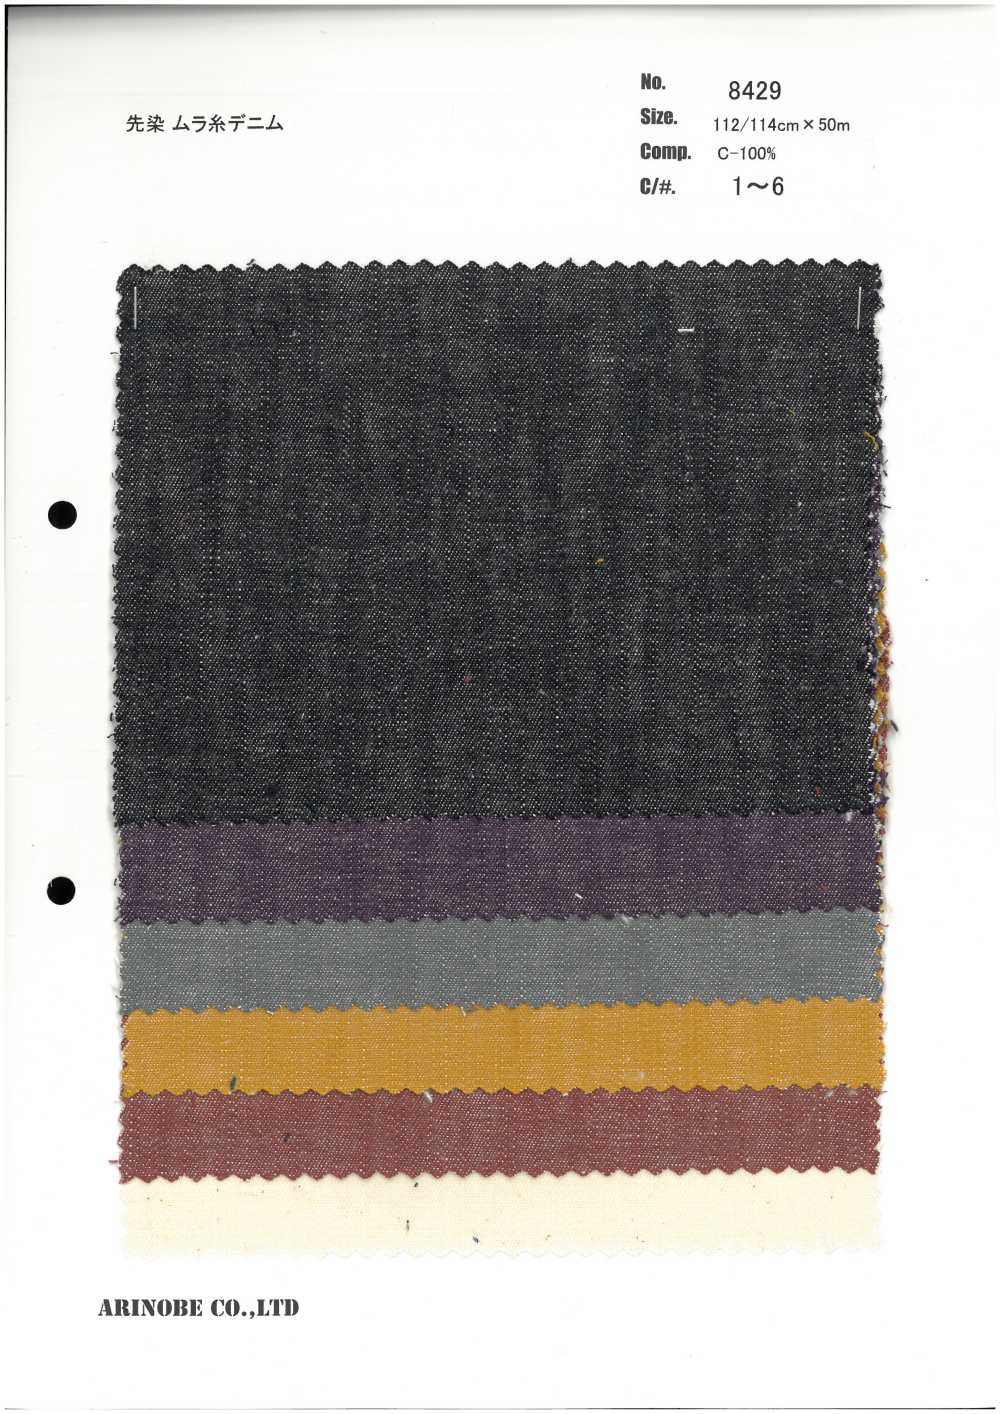 8429 Mezclilla De Hilo Desigual Desigual Teñida Con Hilo[Fabrica Textil] ARINOBE CO., LTD.